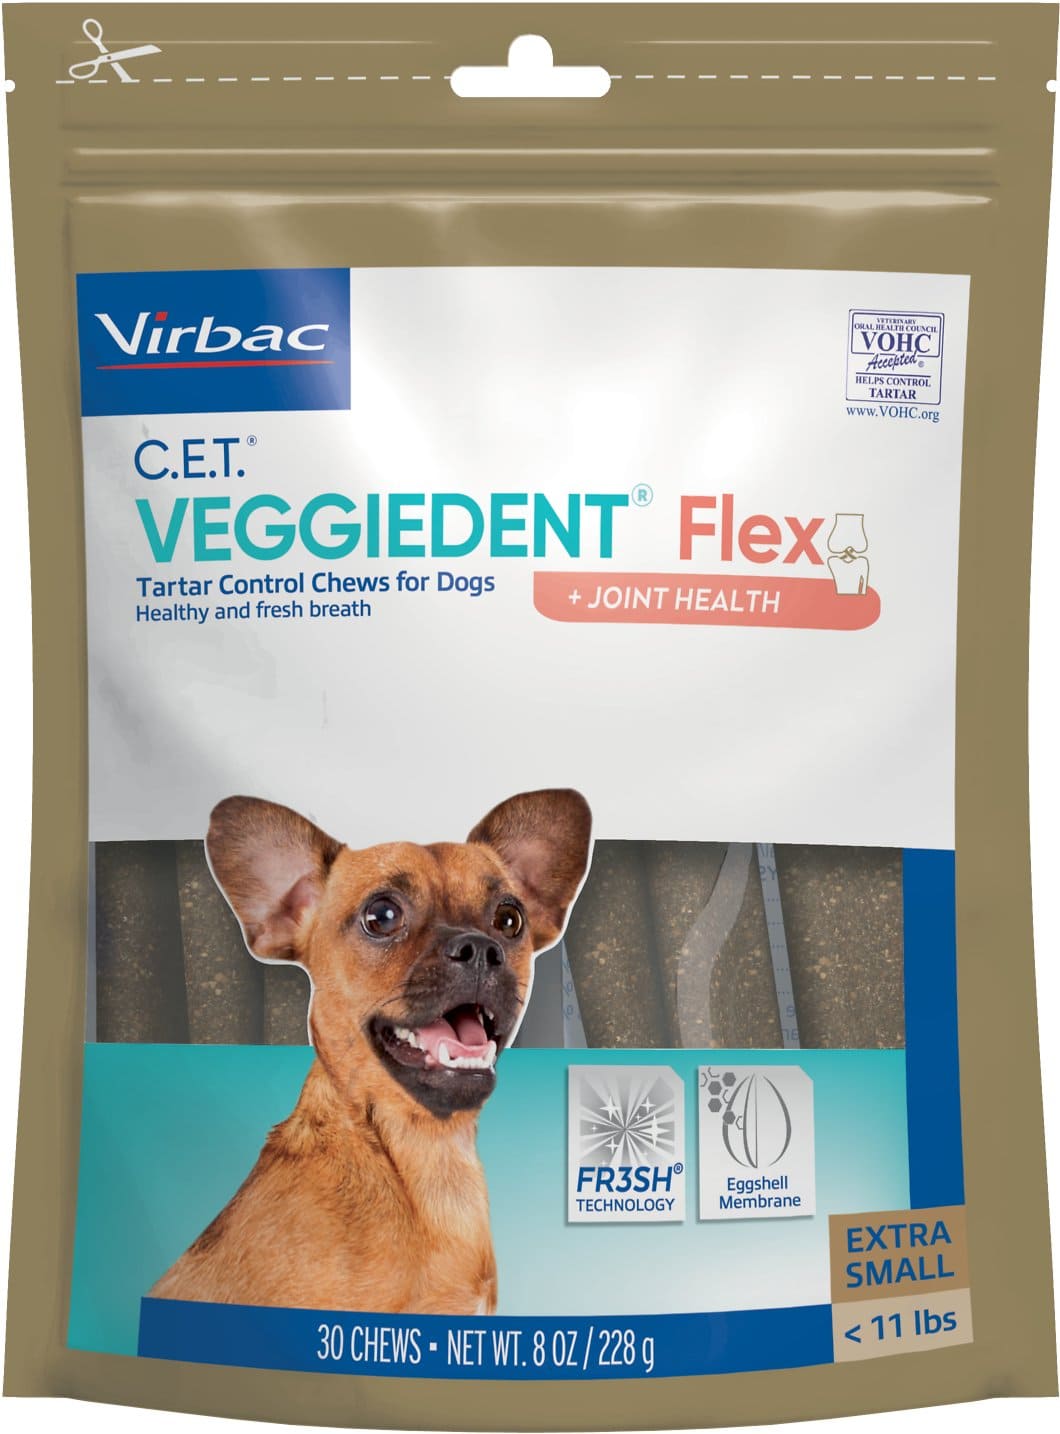 C.E.T. VeggieDent Flex + Joint Health